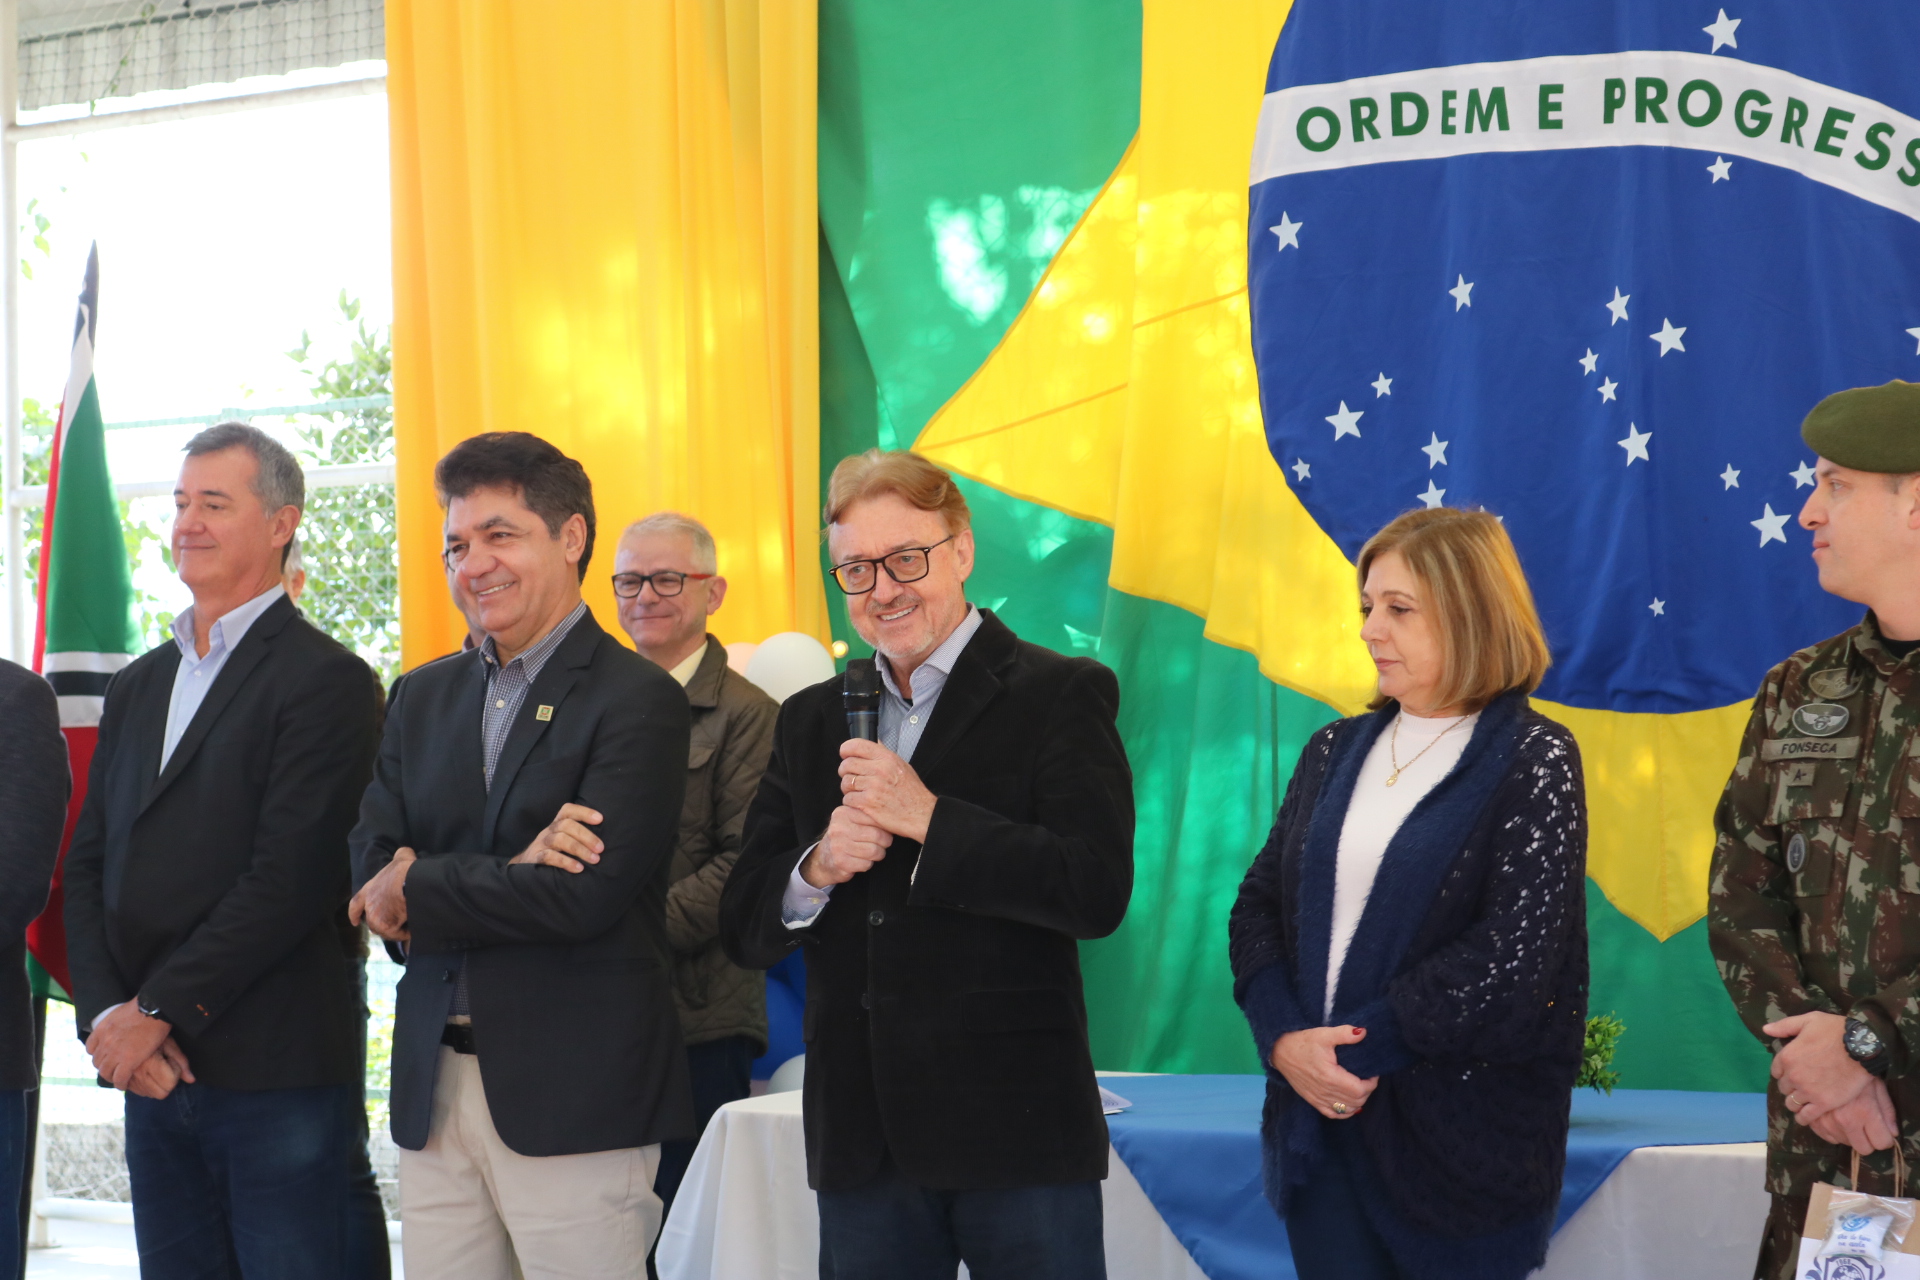 Visita às escolas ocorreu na manhã desta segunda-feira, 16, com a presença do prefeito Clésio Salvaro